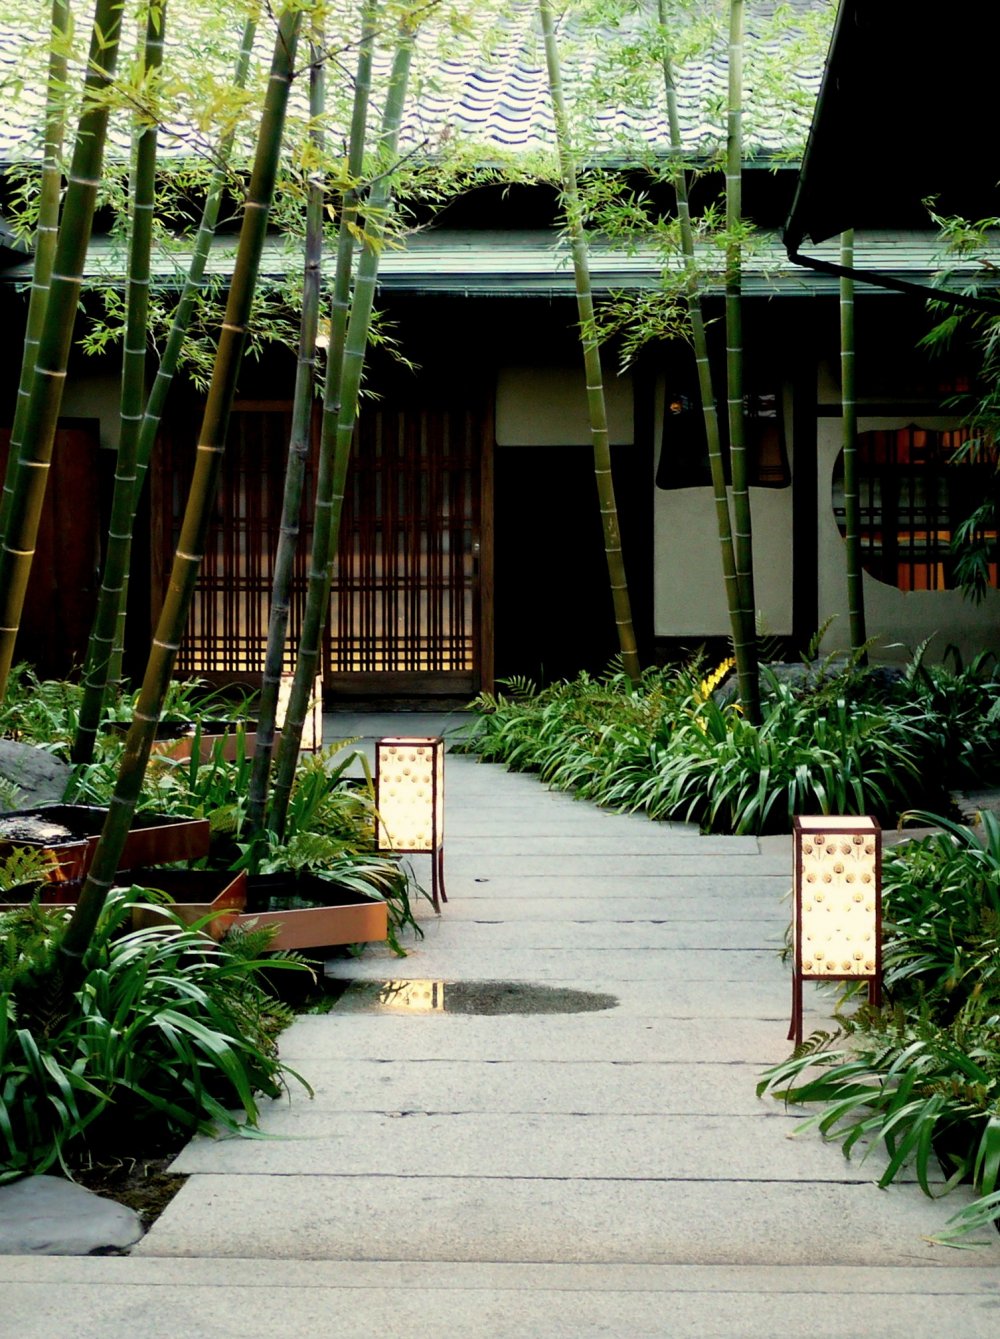 Bamboo garden and lanterns